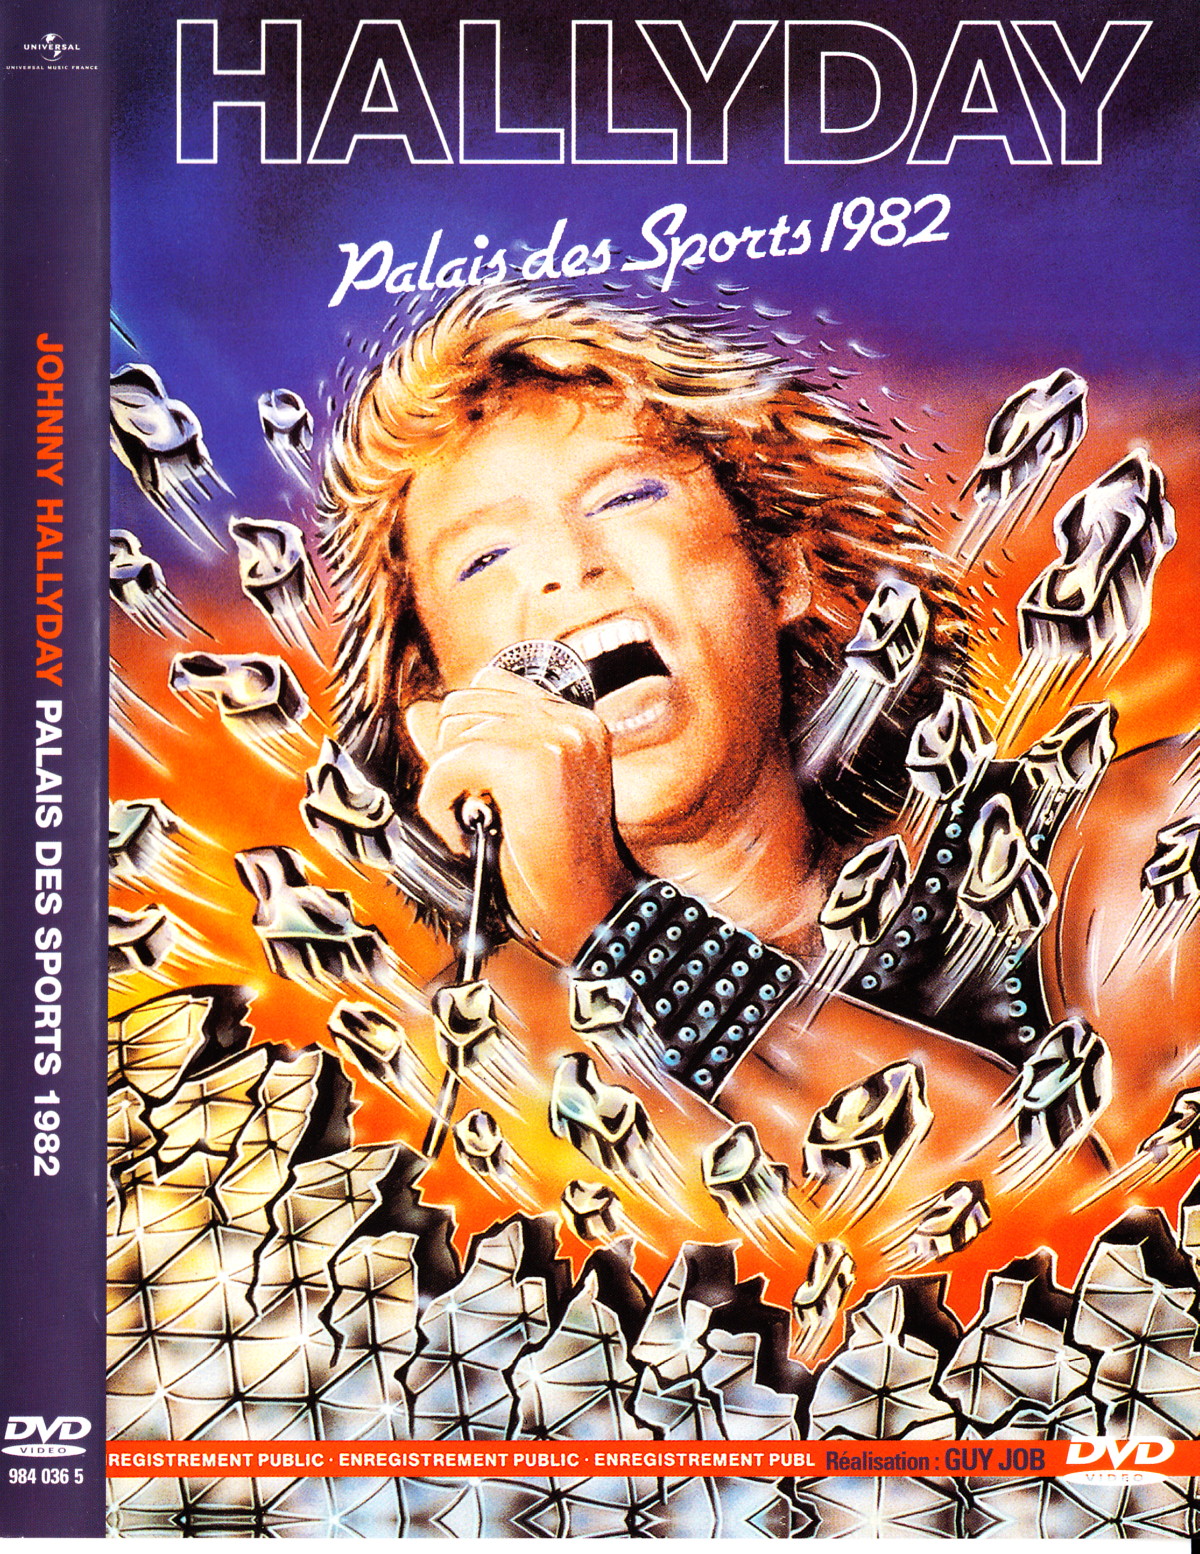 Le show "MAD MAX" PALAIS DES SPORTS 1982 de JOHNNY HALLYDAY par PATRICK EUDELINE 1205161113501423619858702